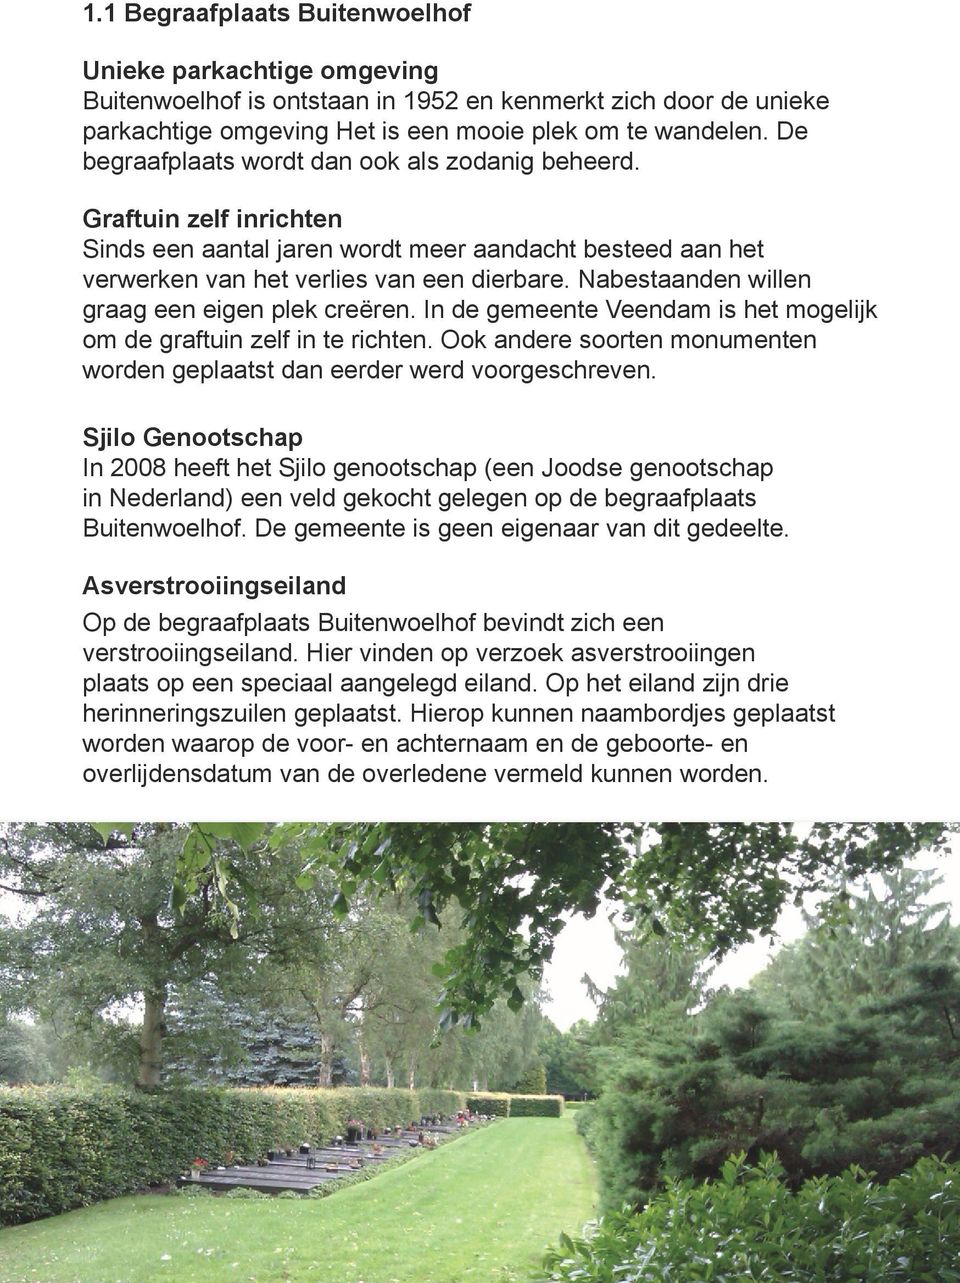 Nabestaanden willen graag een eigen plek creëren. In de gemeente Veendam is het mogelijk om de graftuin zelf in te richten.